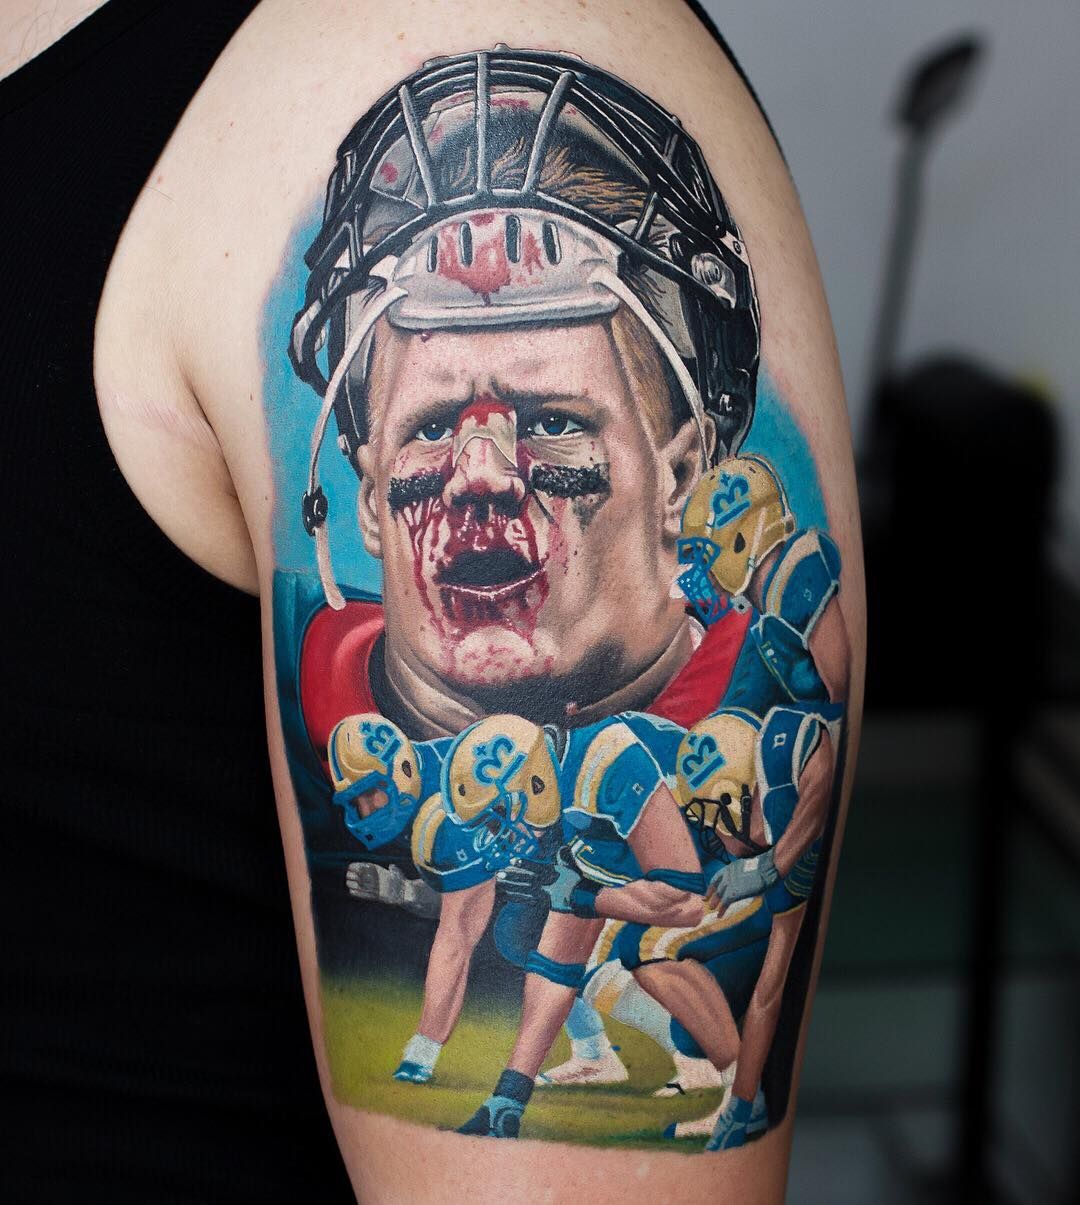 American football tattoo by Korky Availability at Holy Trinity